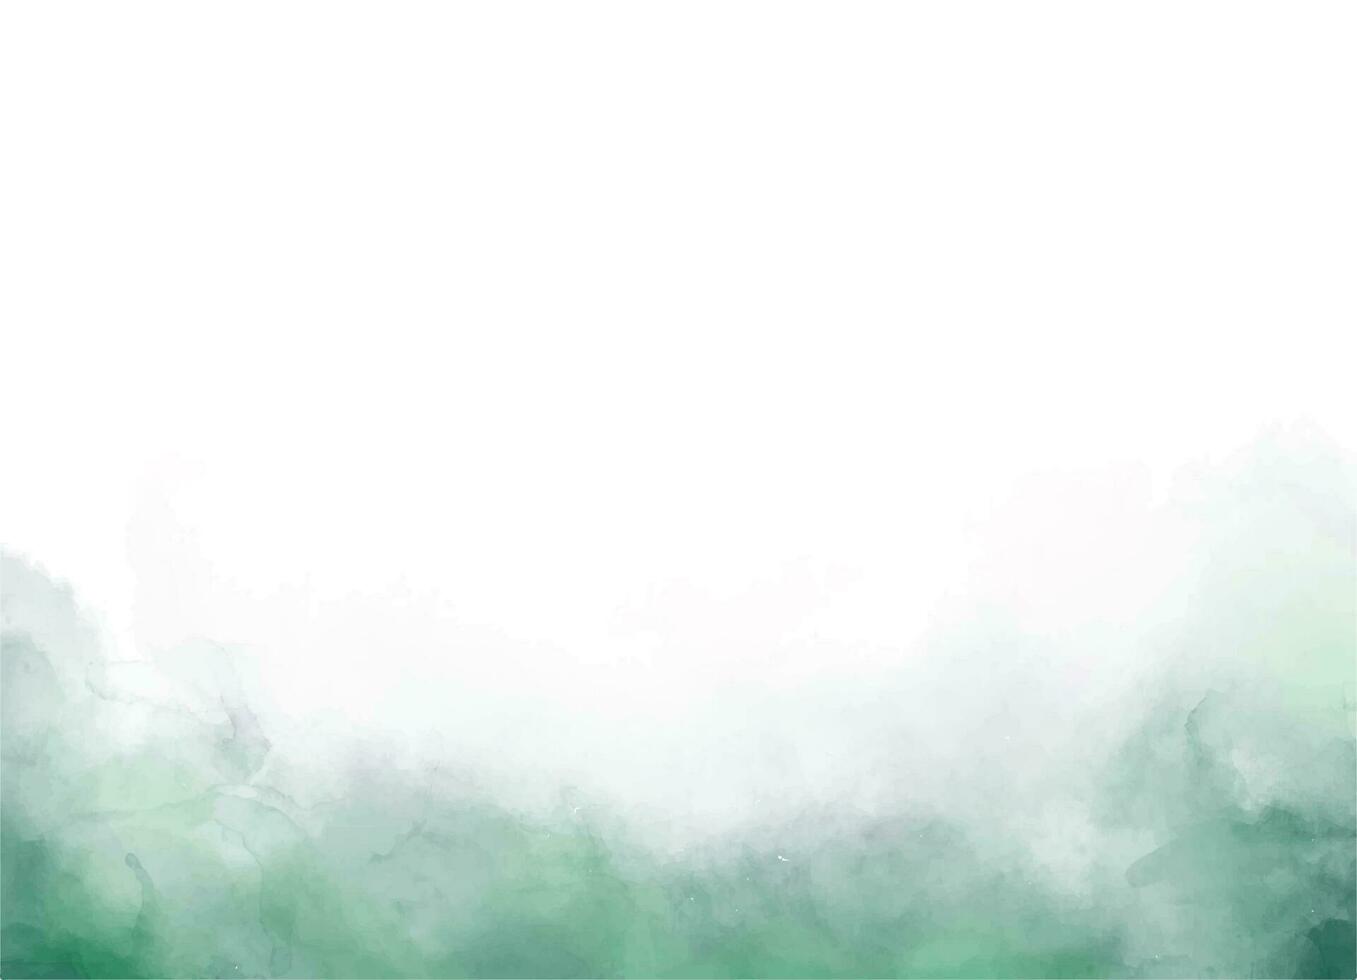 konstnärlig, abstrakt grön, mörk mystisk vattenfärg bakgrund med stänk med dimma dimma effekt vektor